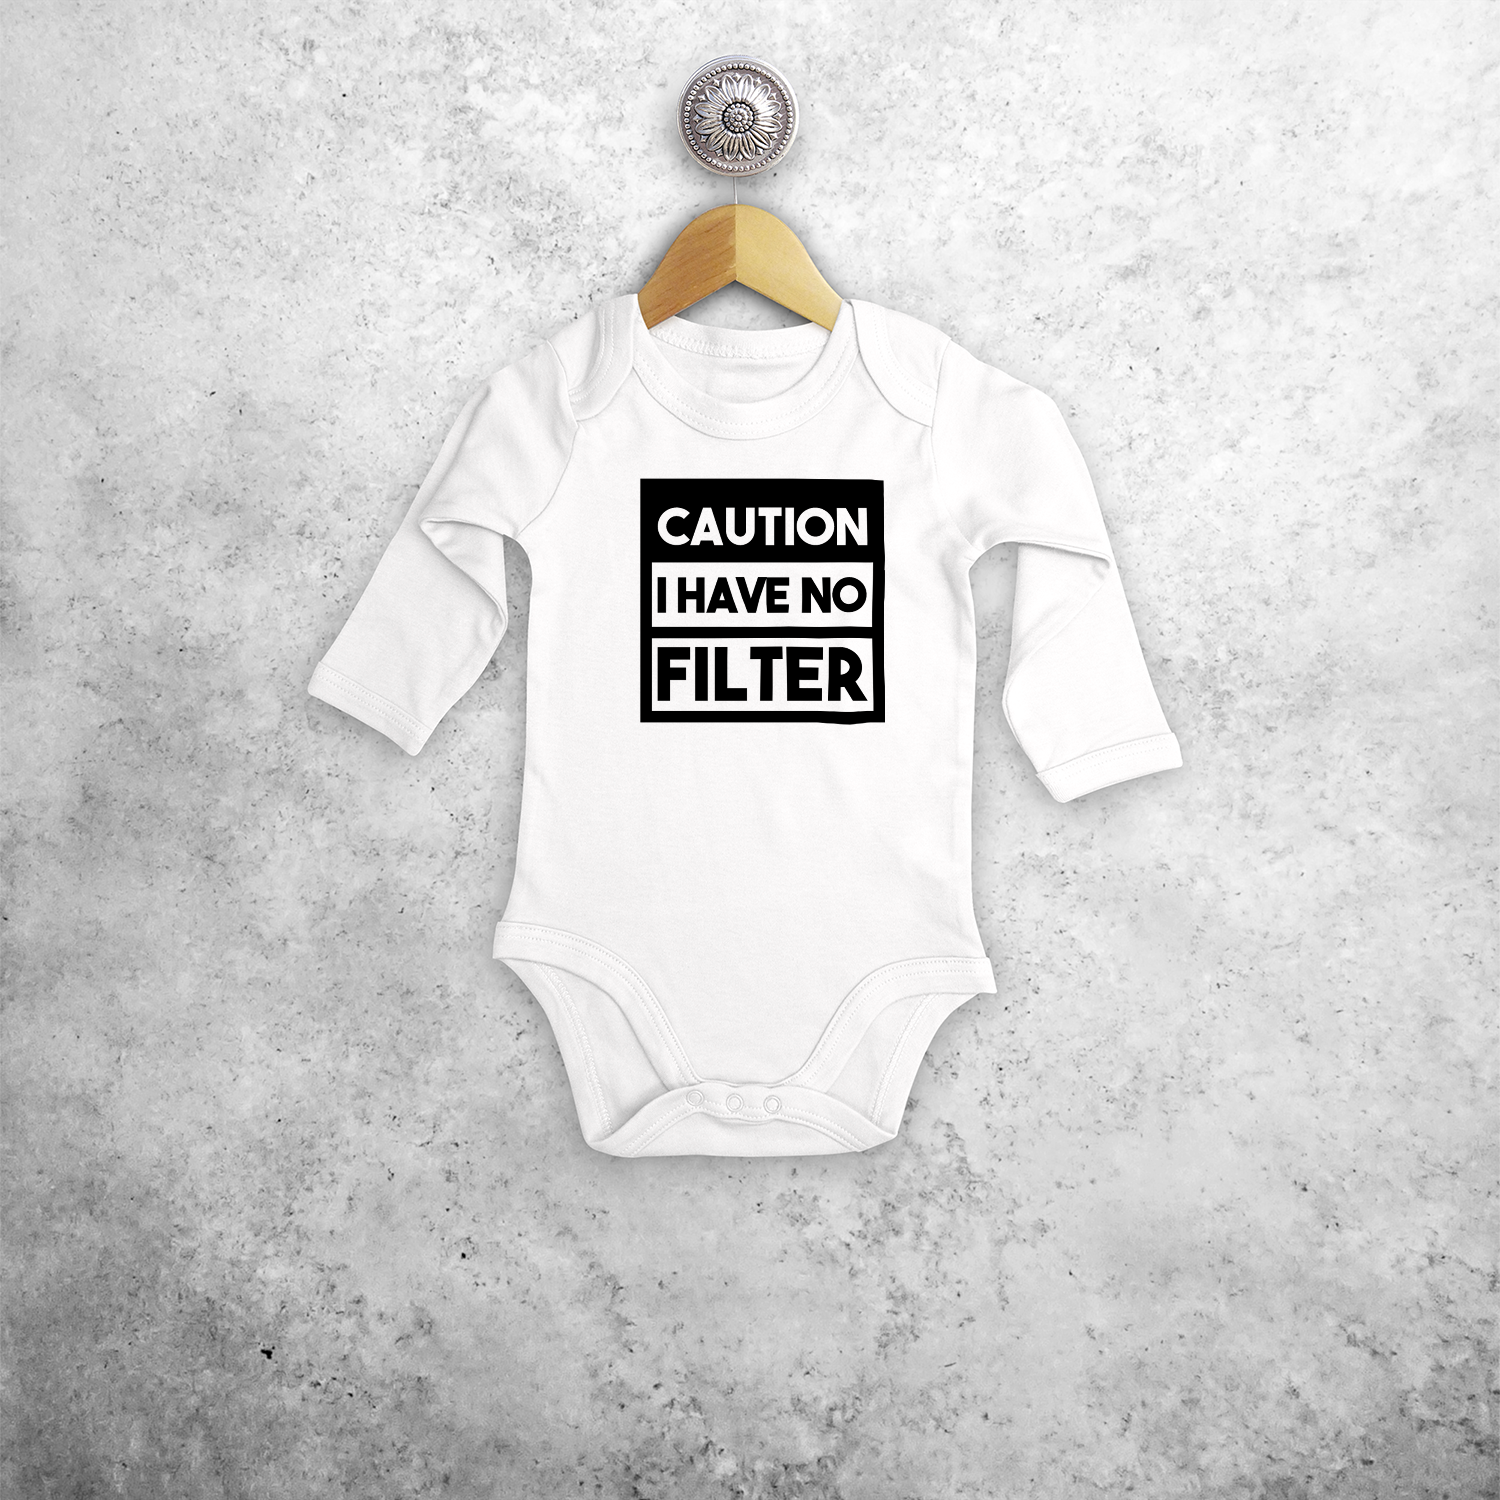 Caution: I have no filter' baby kruippakje met lange mouwen